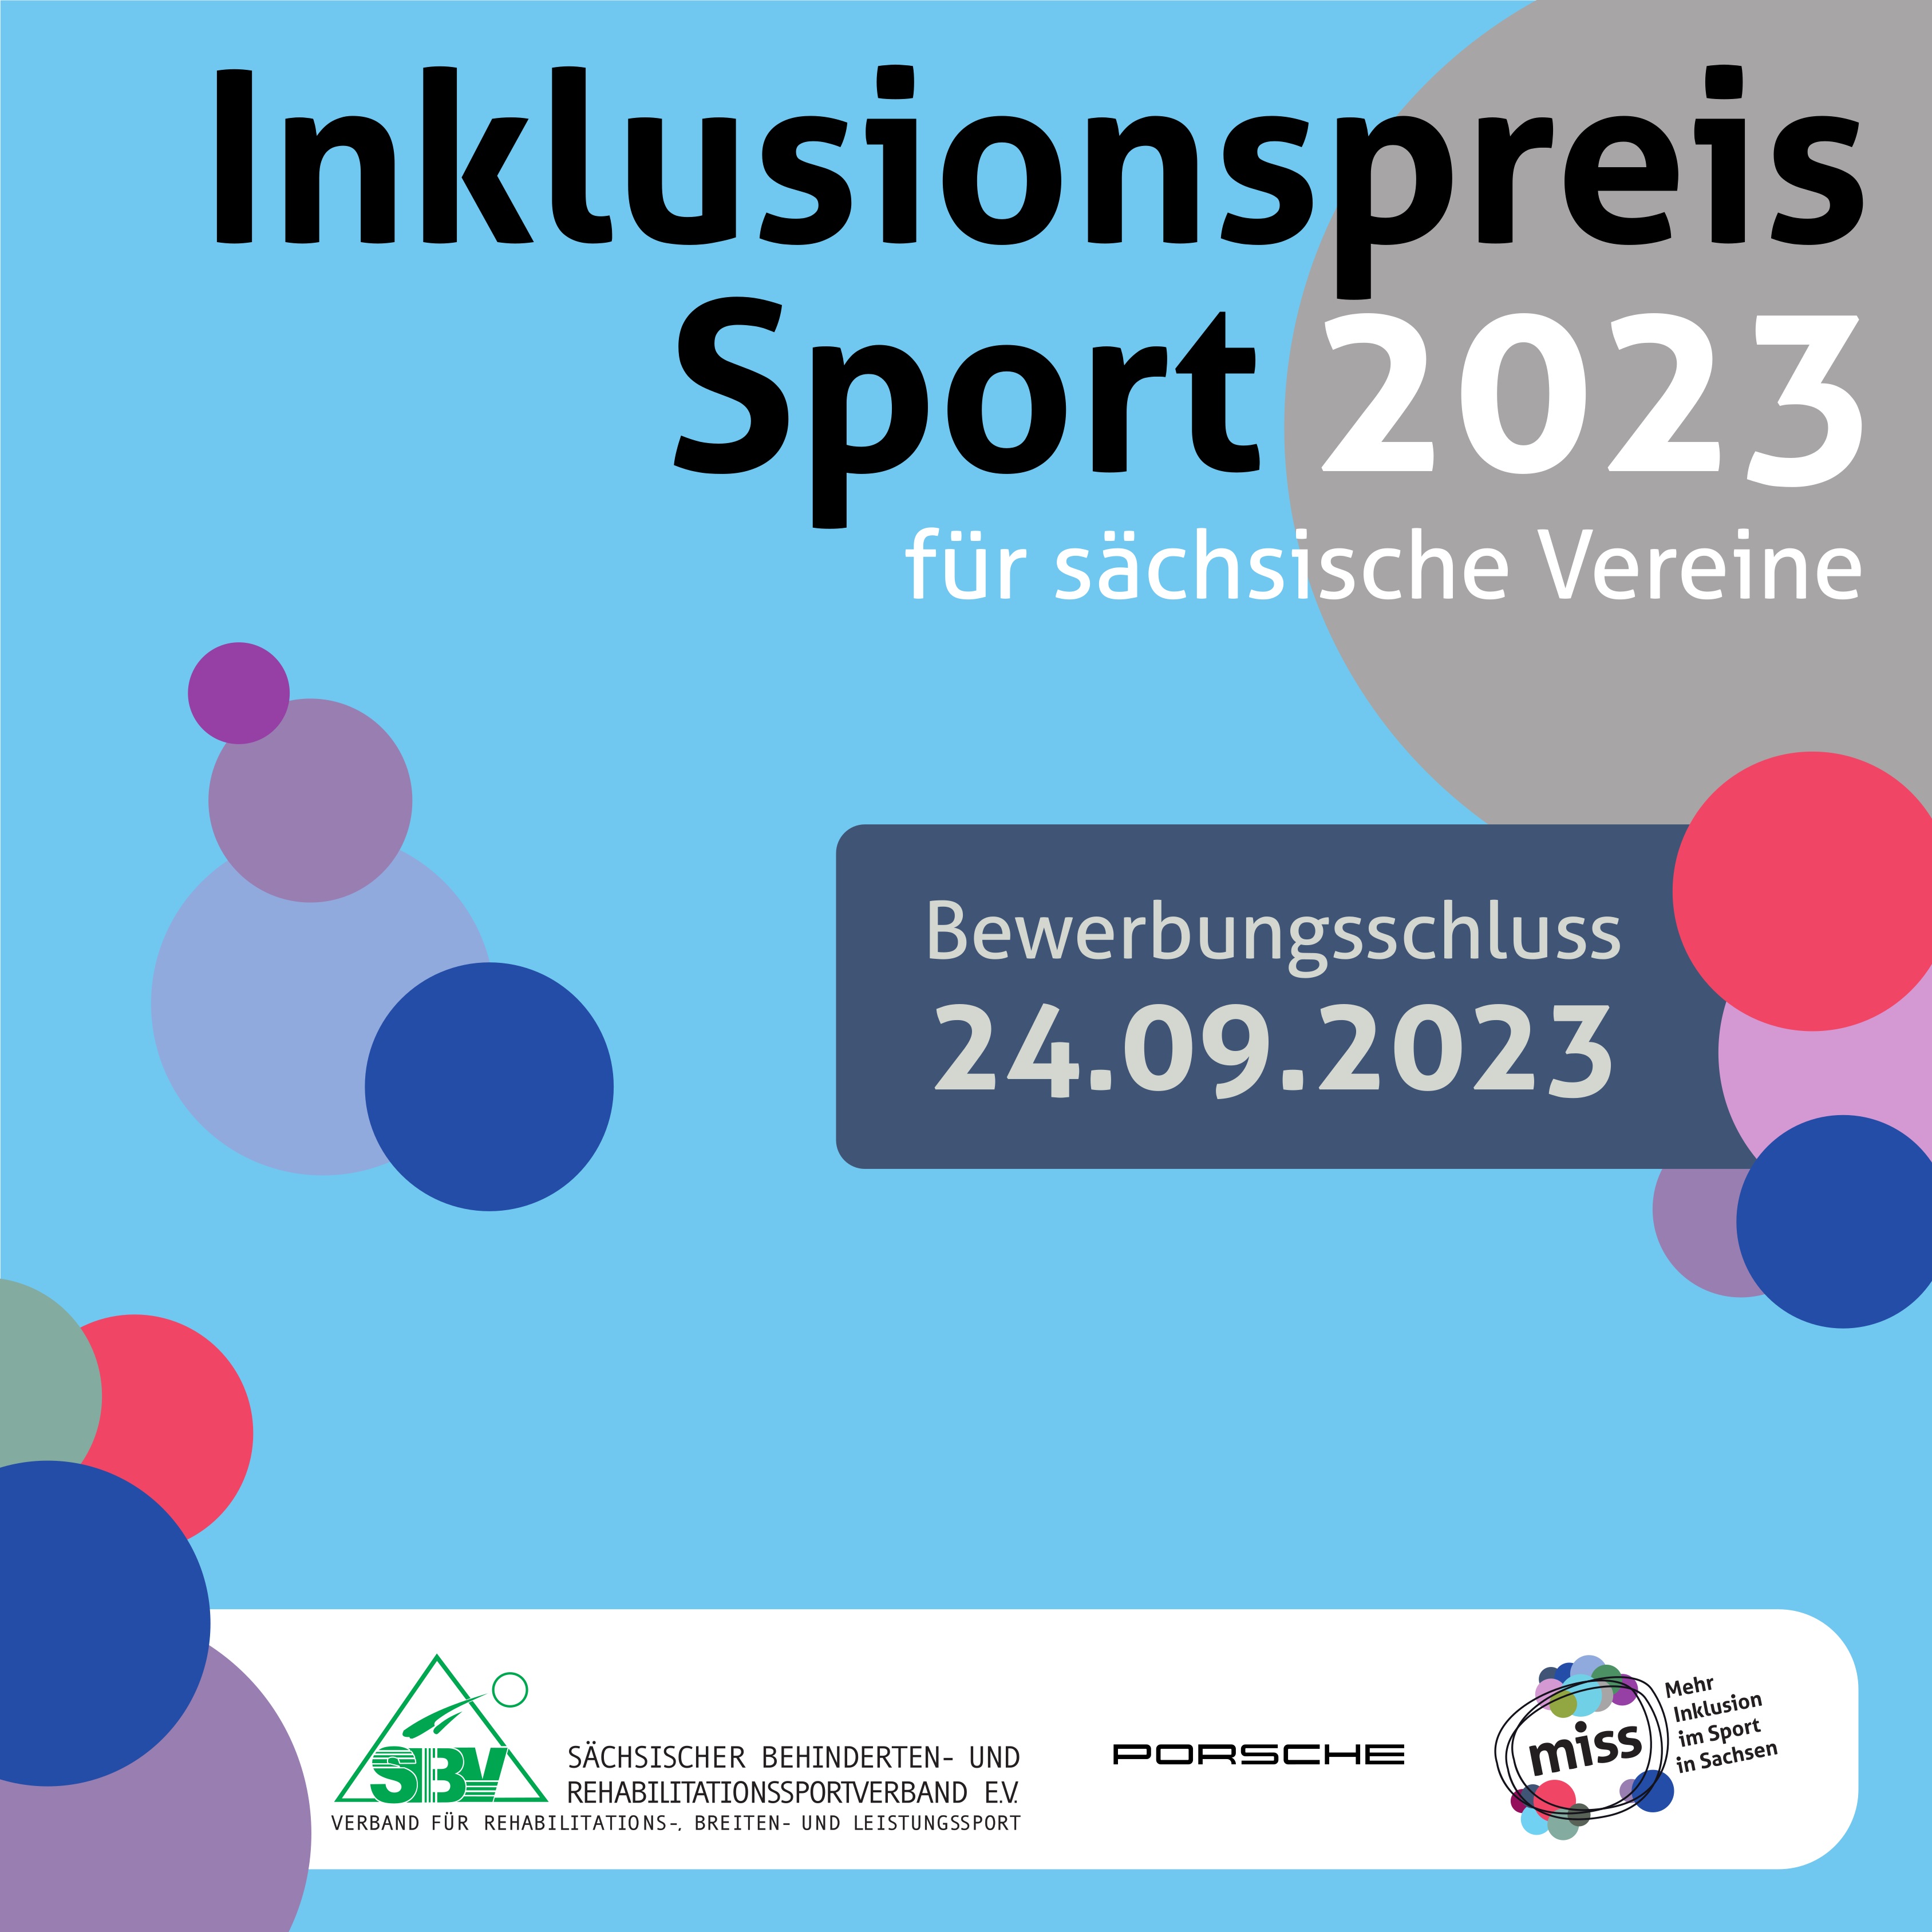 Sportbund Bautzen Newsbild - Inklusionspreis Sport für sächsische Vereine 2023